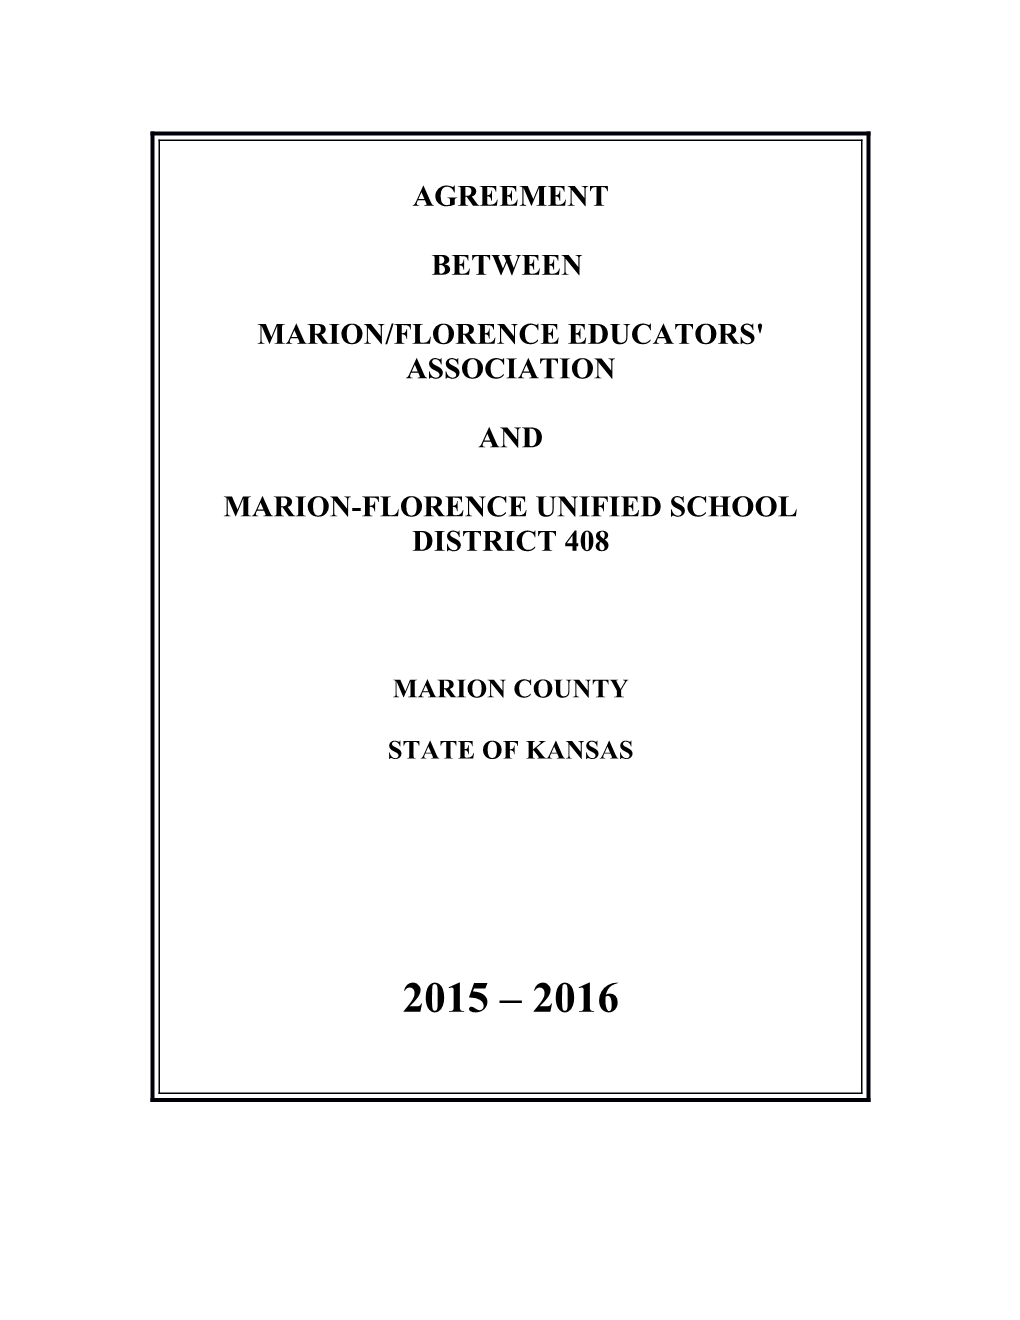 Marion/Florence Educators' Association